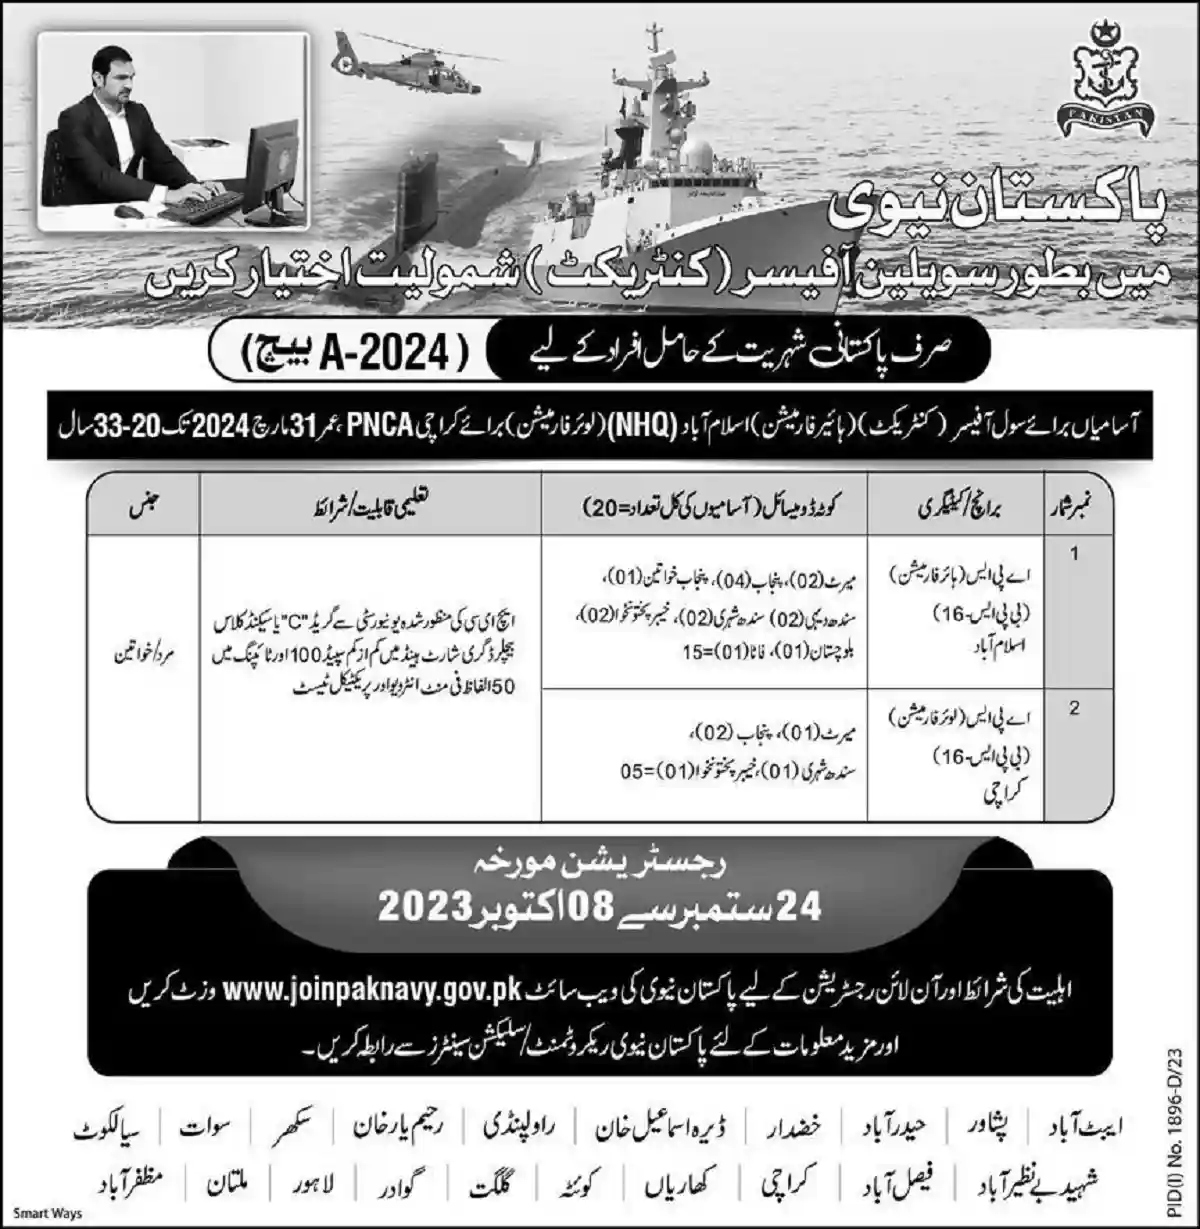 Pak-Navy-Jobs-Advertisement-2023-1.webp 